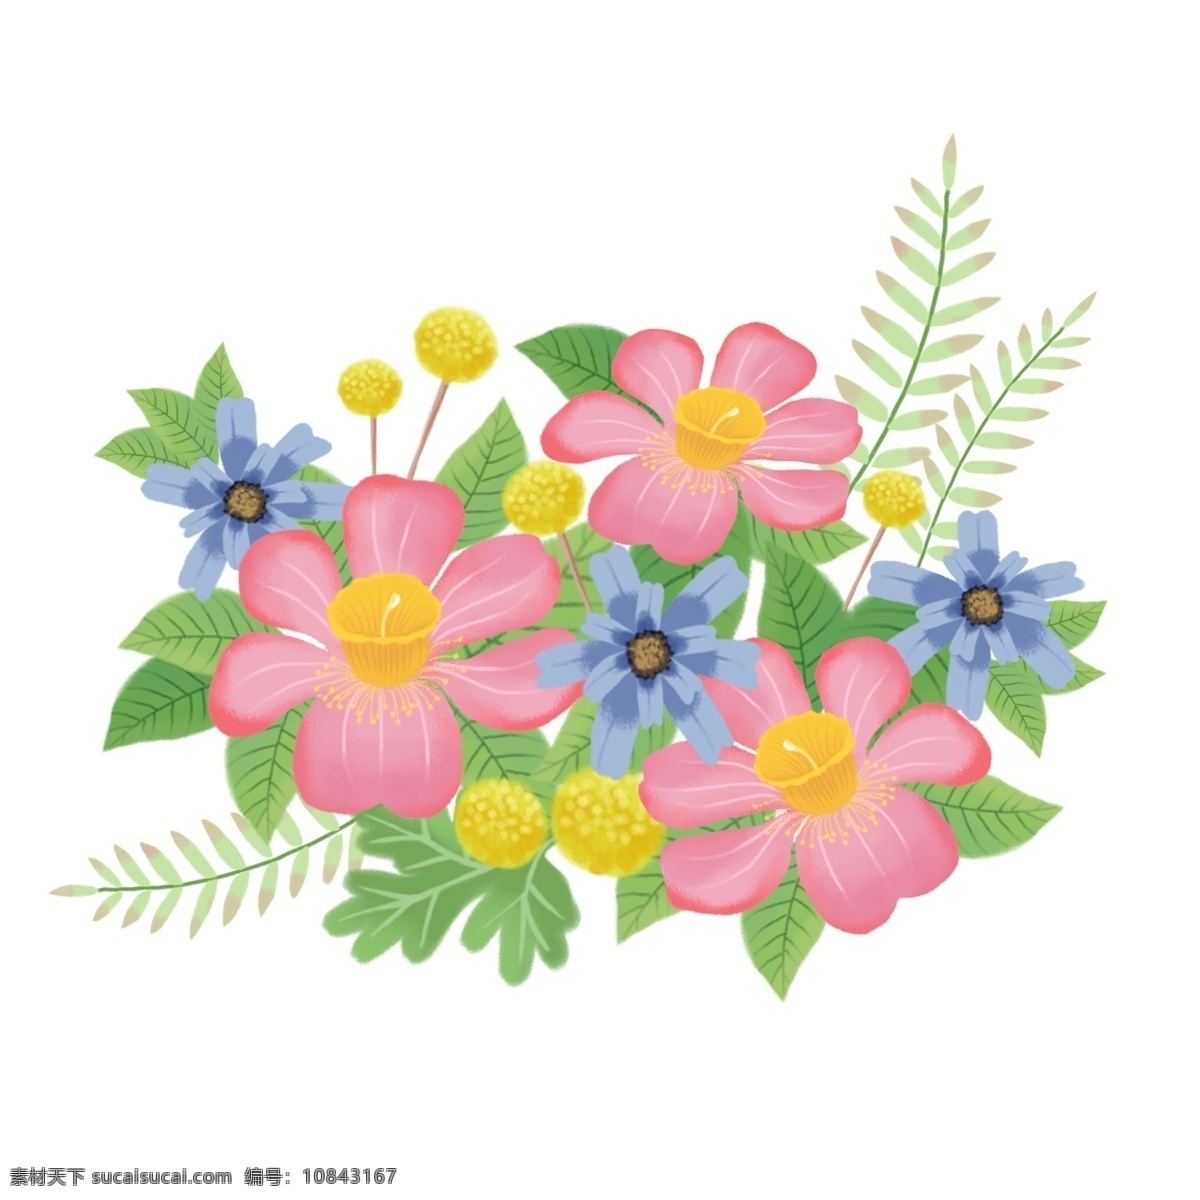 可爱 装饰 手绘 清新 唯美 卡通 花卉 植物 花束 花朵 手绘花 花 节日